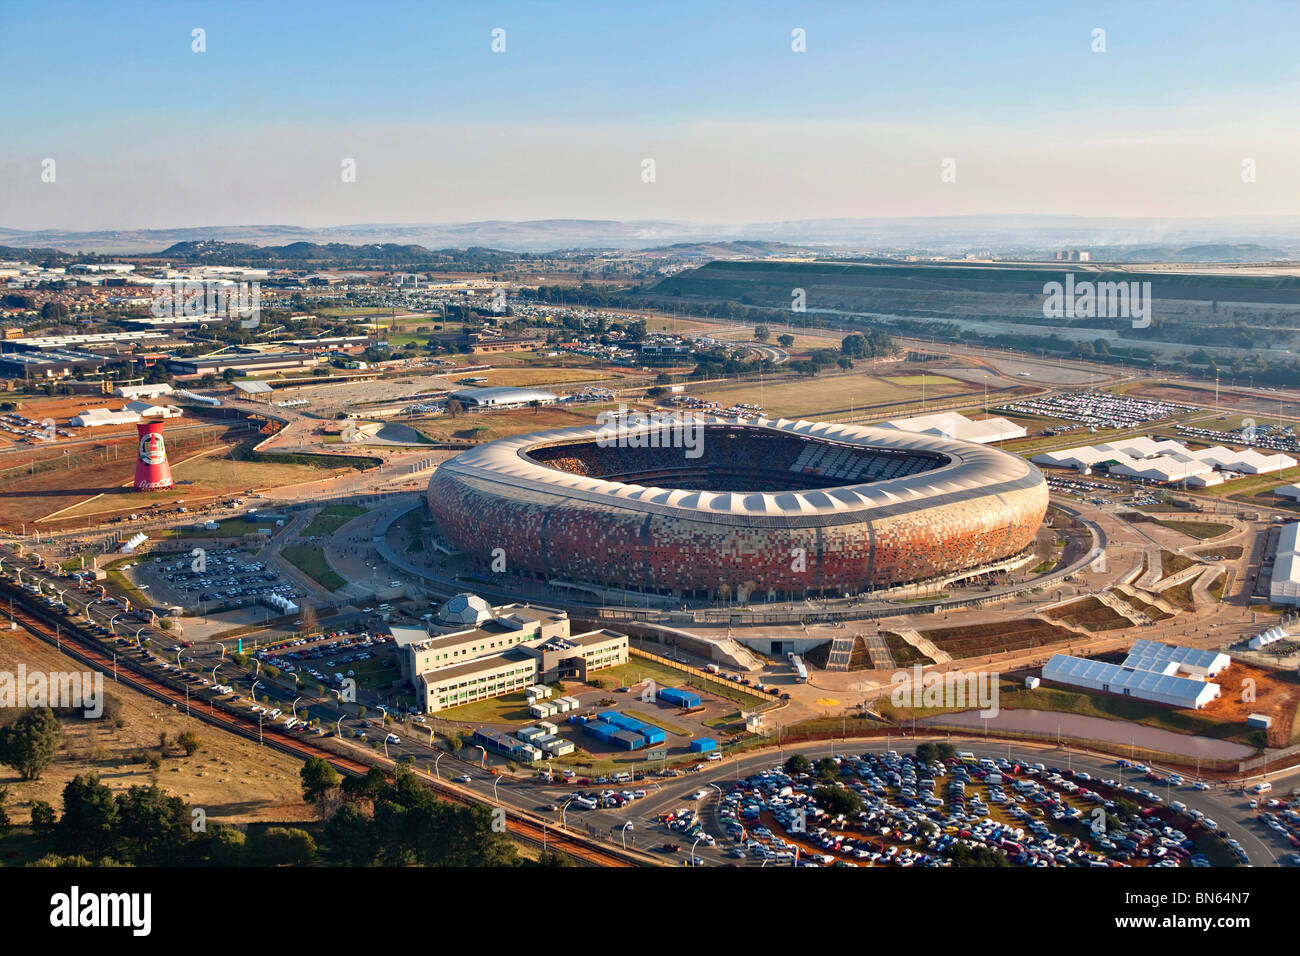 Vista aérea de la FIFA 2010 estadio Soccer City con forma de calabaza con la silueta de la ciudad de Johannesburgo en la distancia Foto de stock